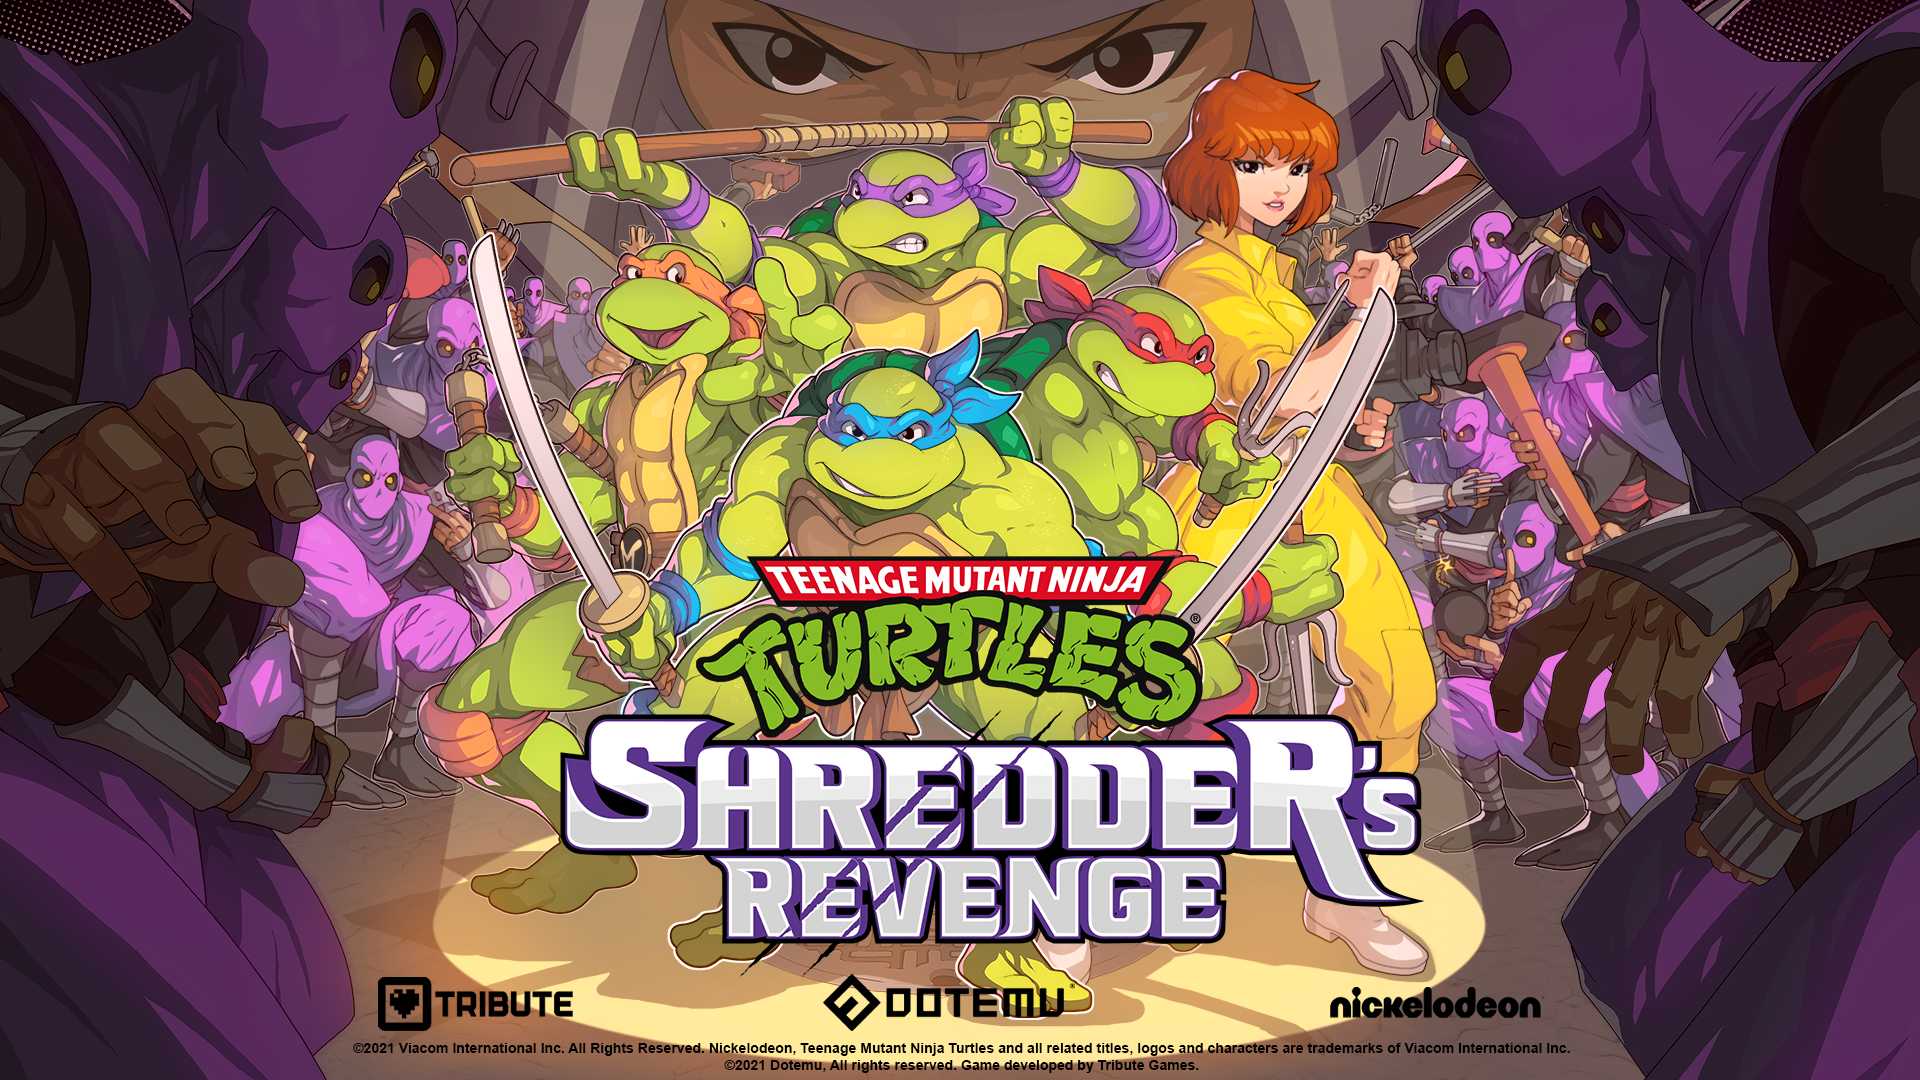 April O’Neil joins the fight in Teenage Mutant Ninja Turtles: Shredder’s Revenge!